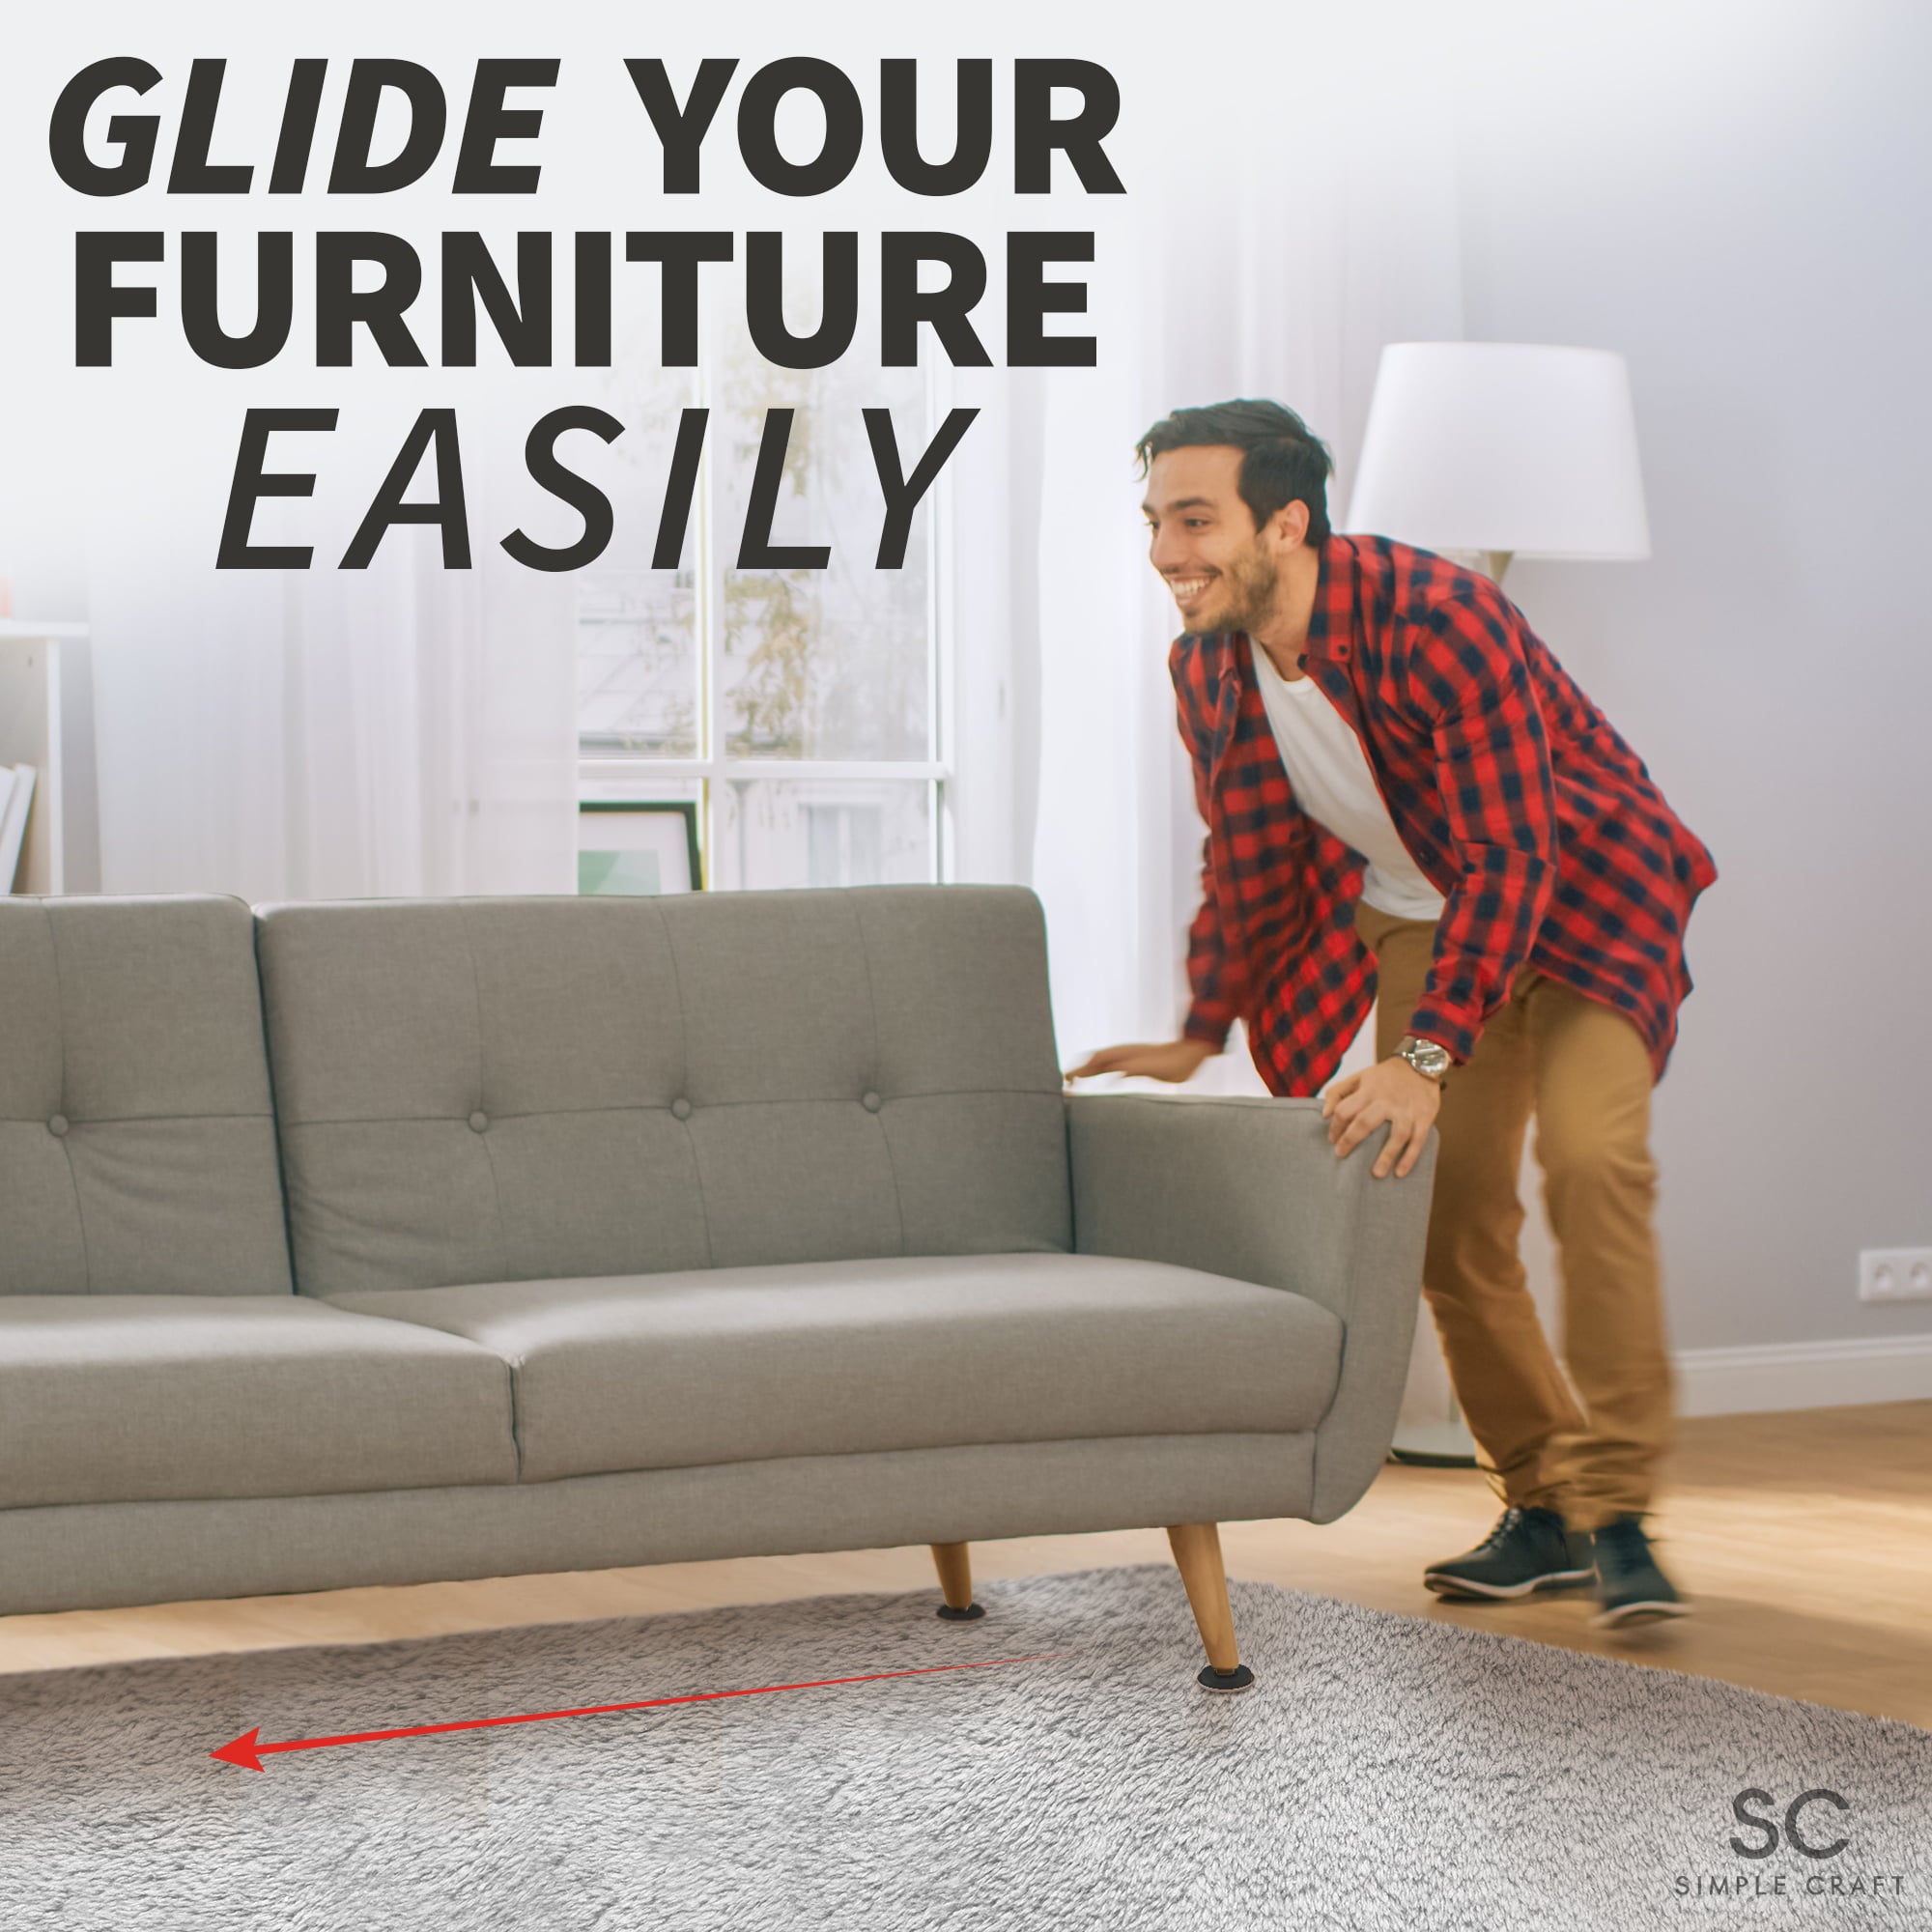 Simple Craft 16pcs Felt Furniture Sliders for Hardwood Floors 3 1/2" - Smooth Pads